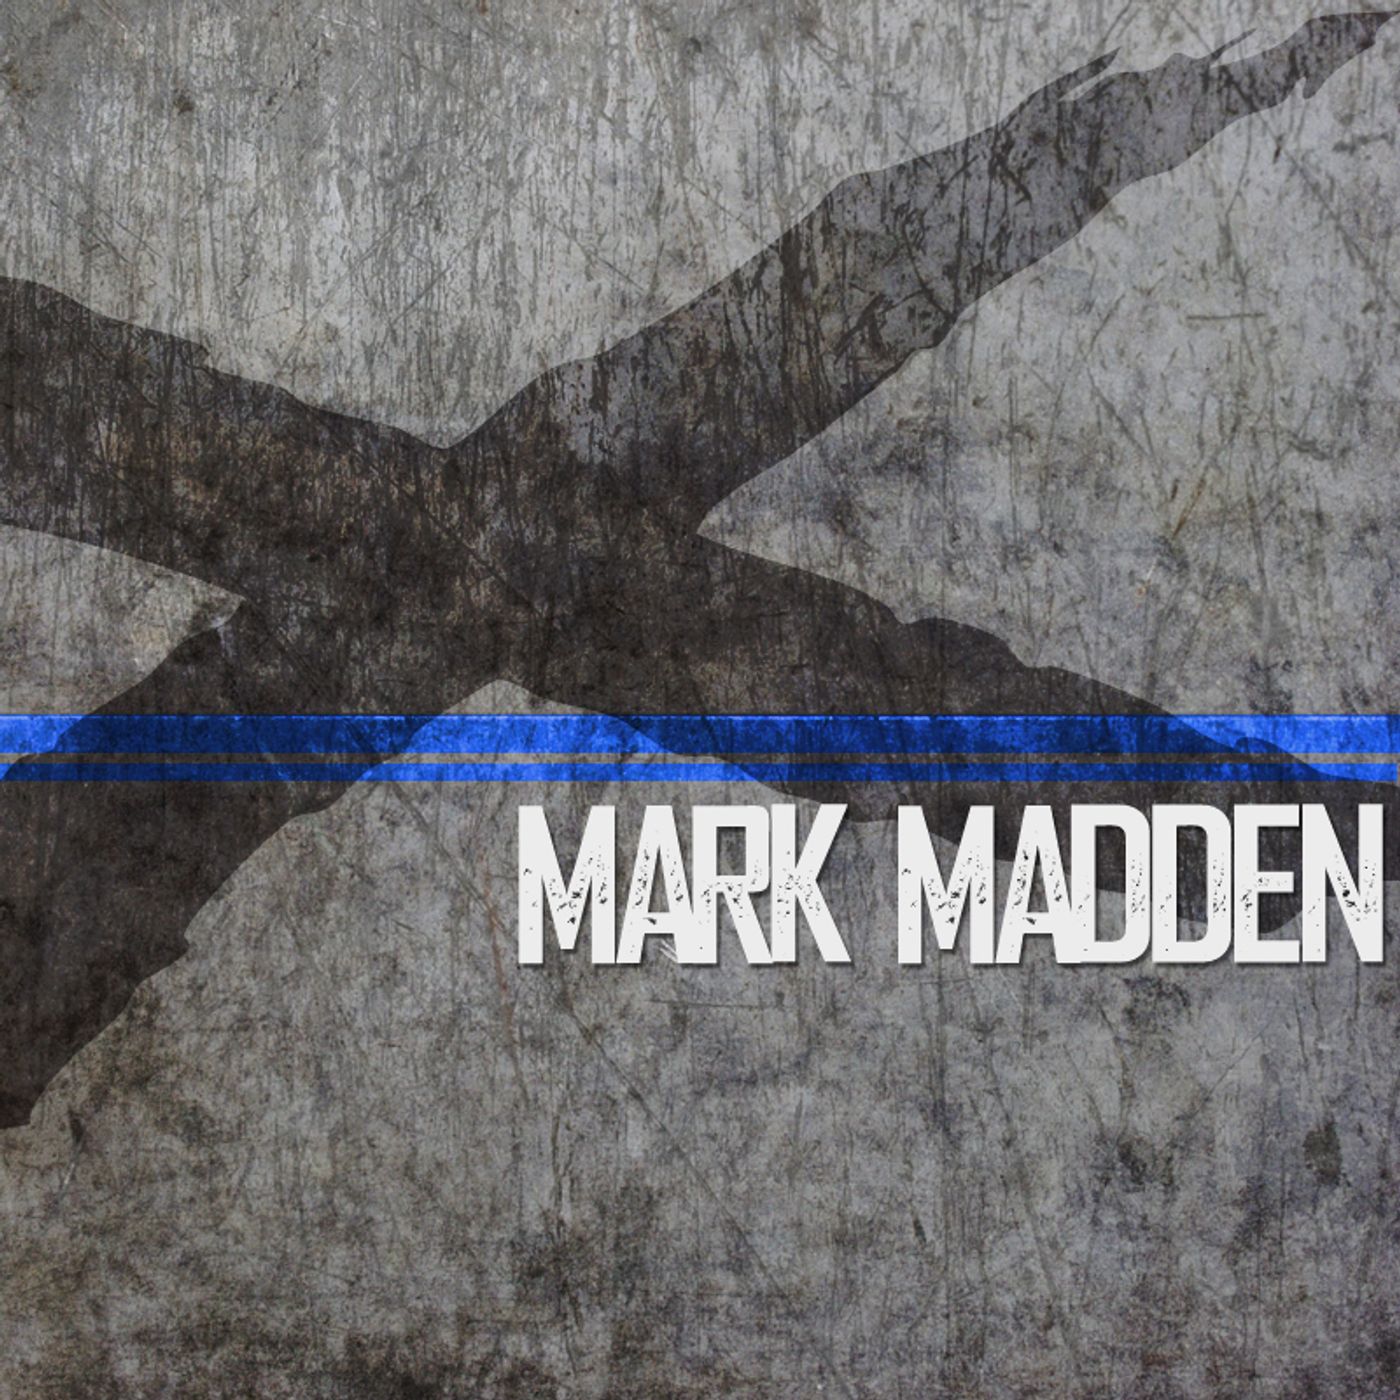 Mark Madden, Super Genius